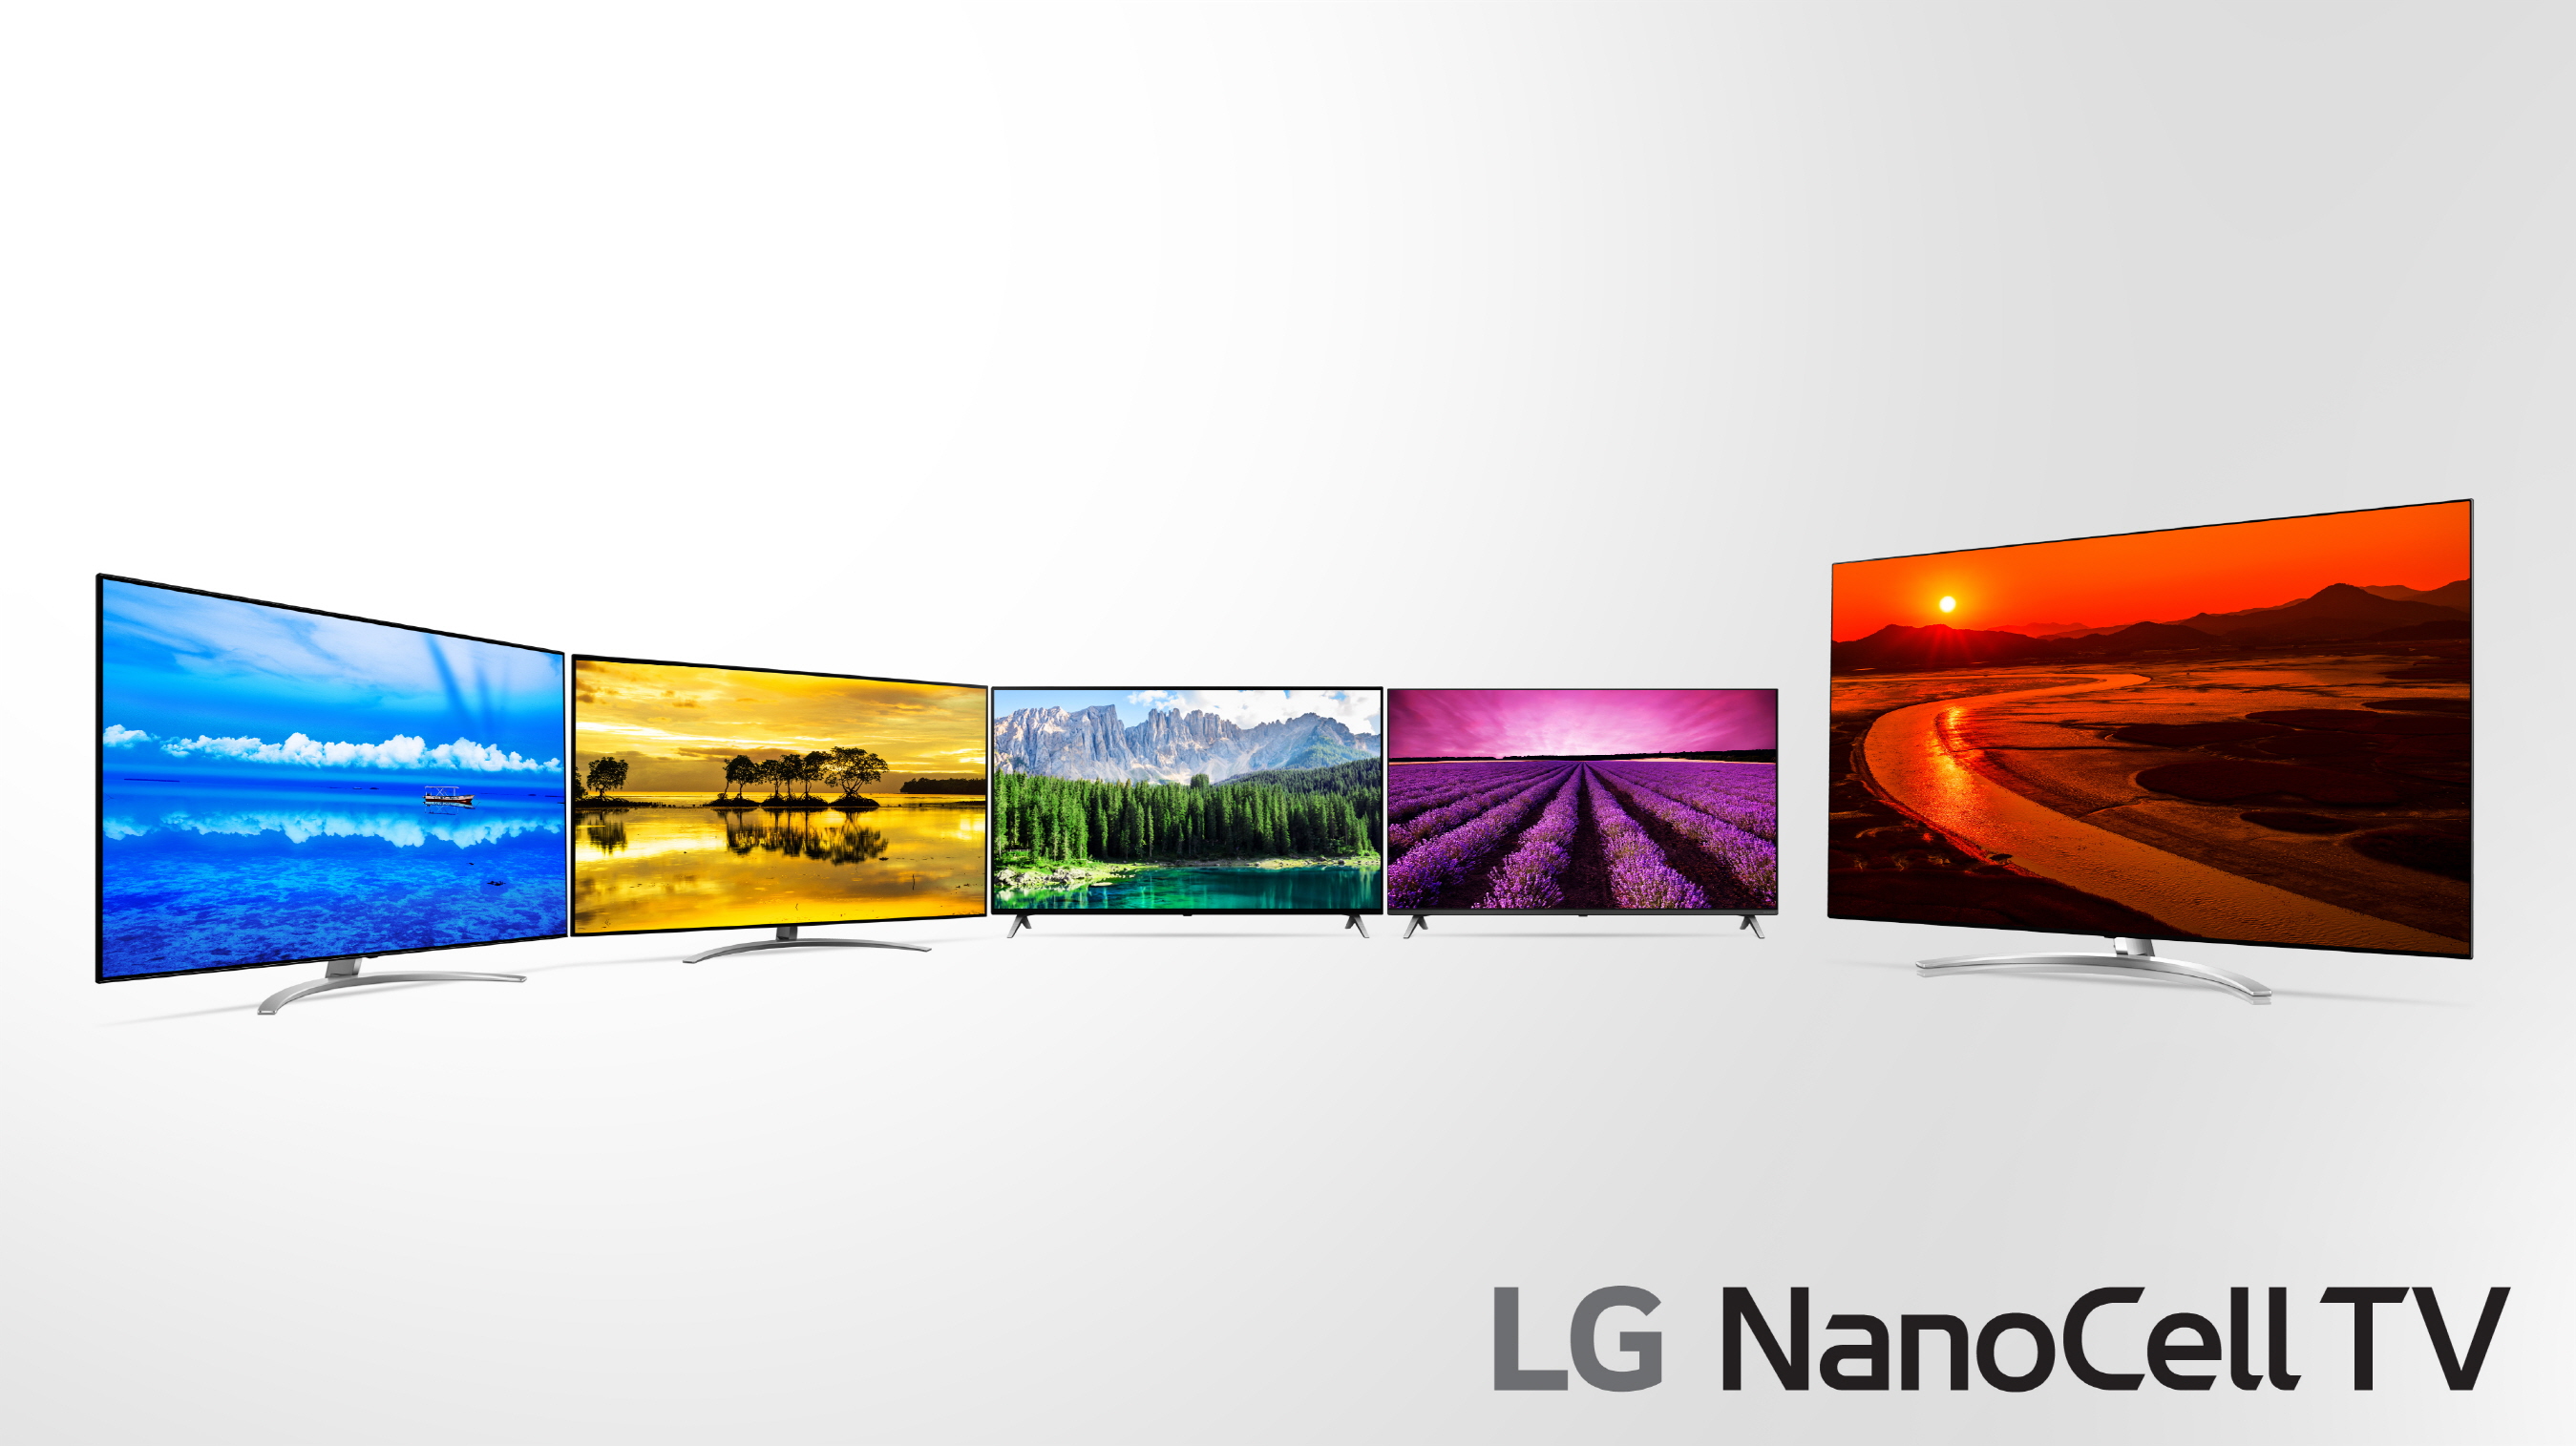 LG NanoCell TV Range